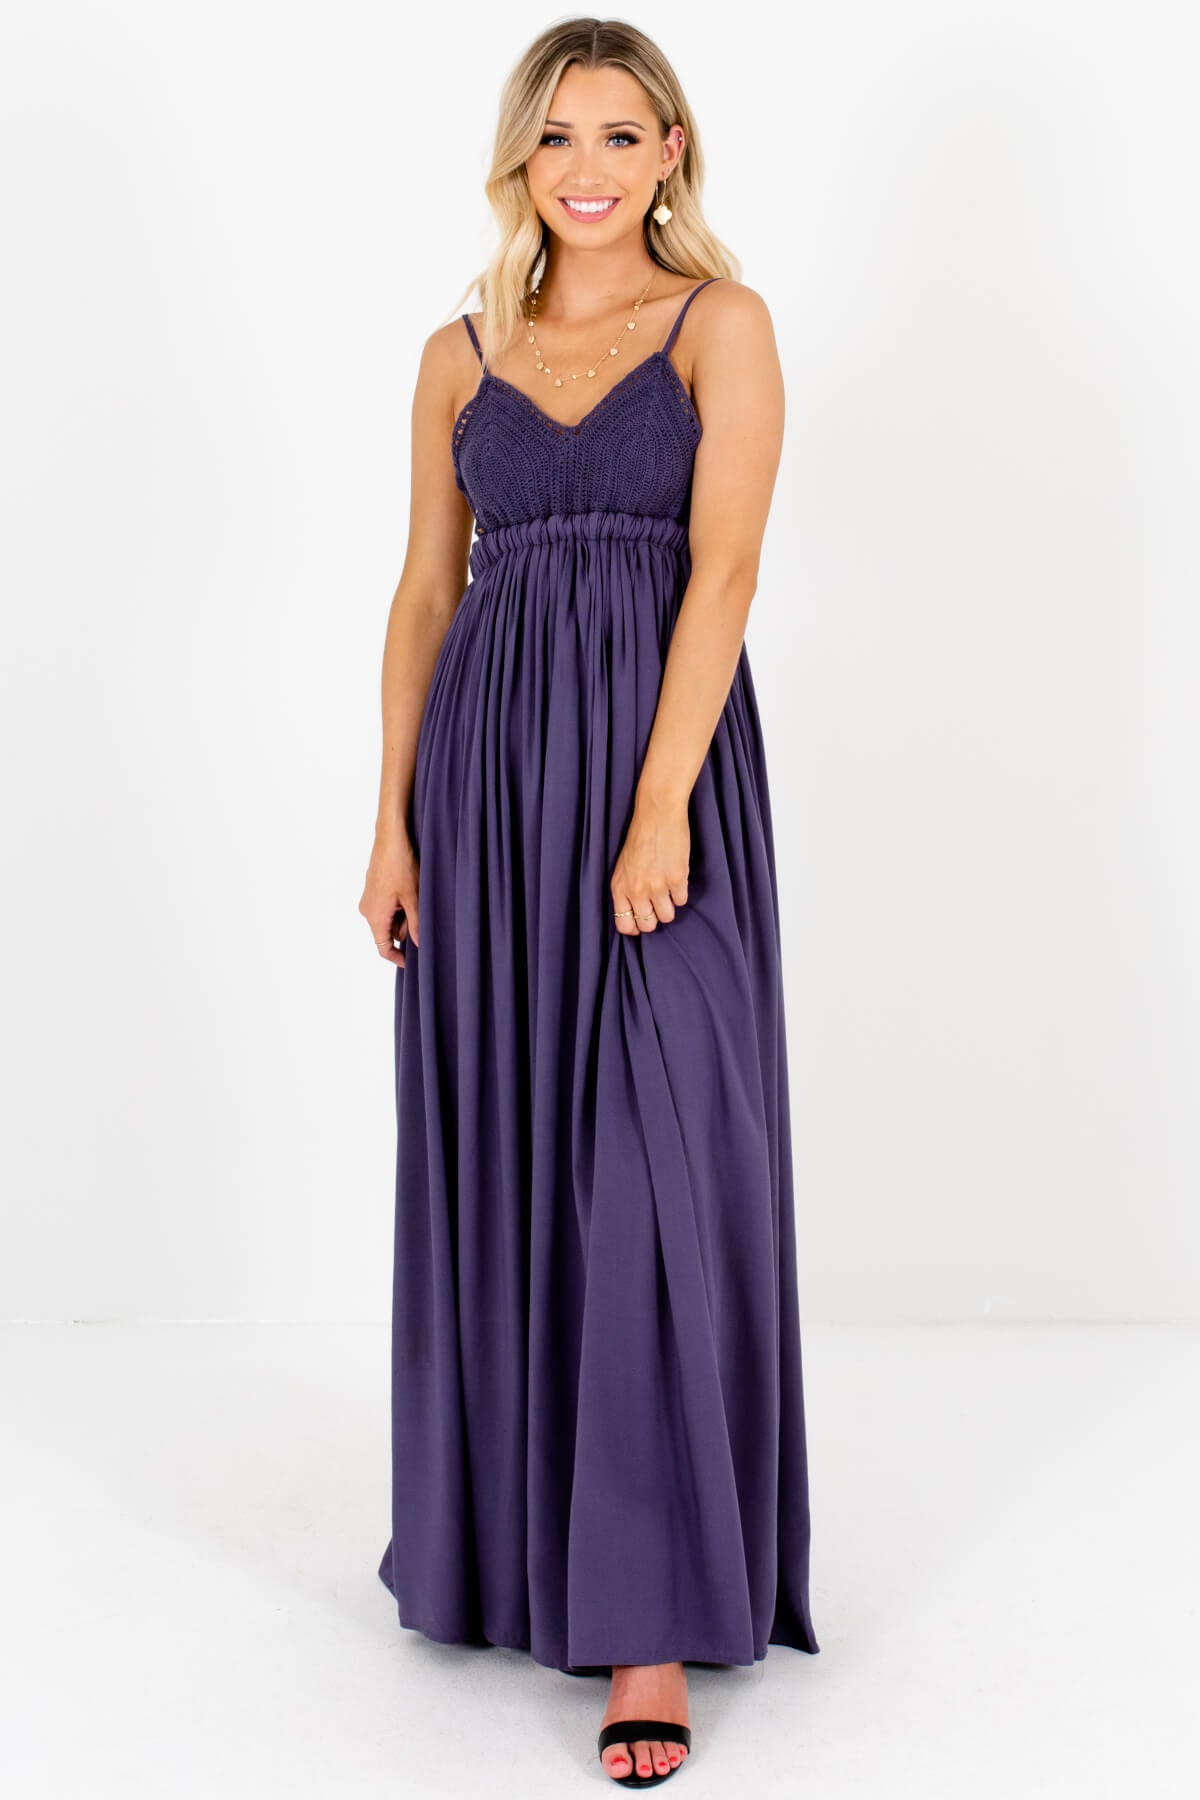 Slate Blue Purple Crochet Bodice Open Back Maxi Dresses for Women